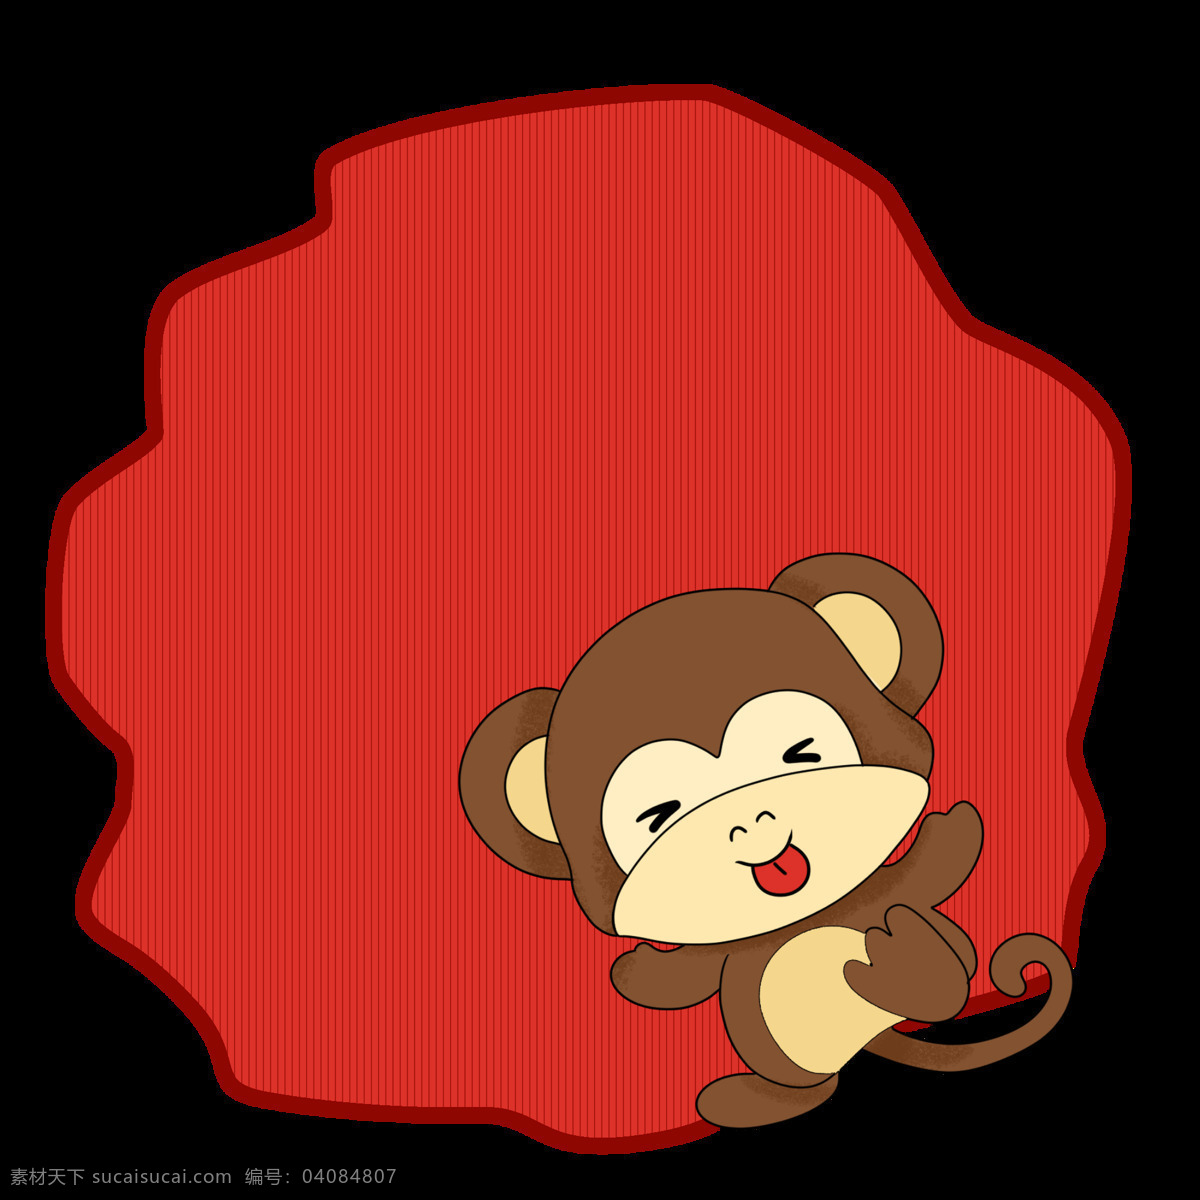 红色 猴子 边框 插画 卡通猴子边框 手绘猴子边框 猴子边框插画 漂亮 猴子边框装饰